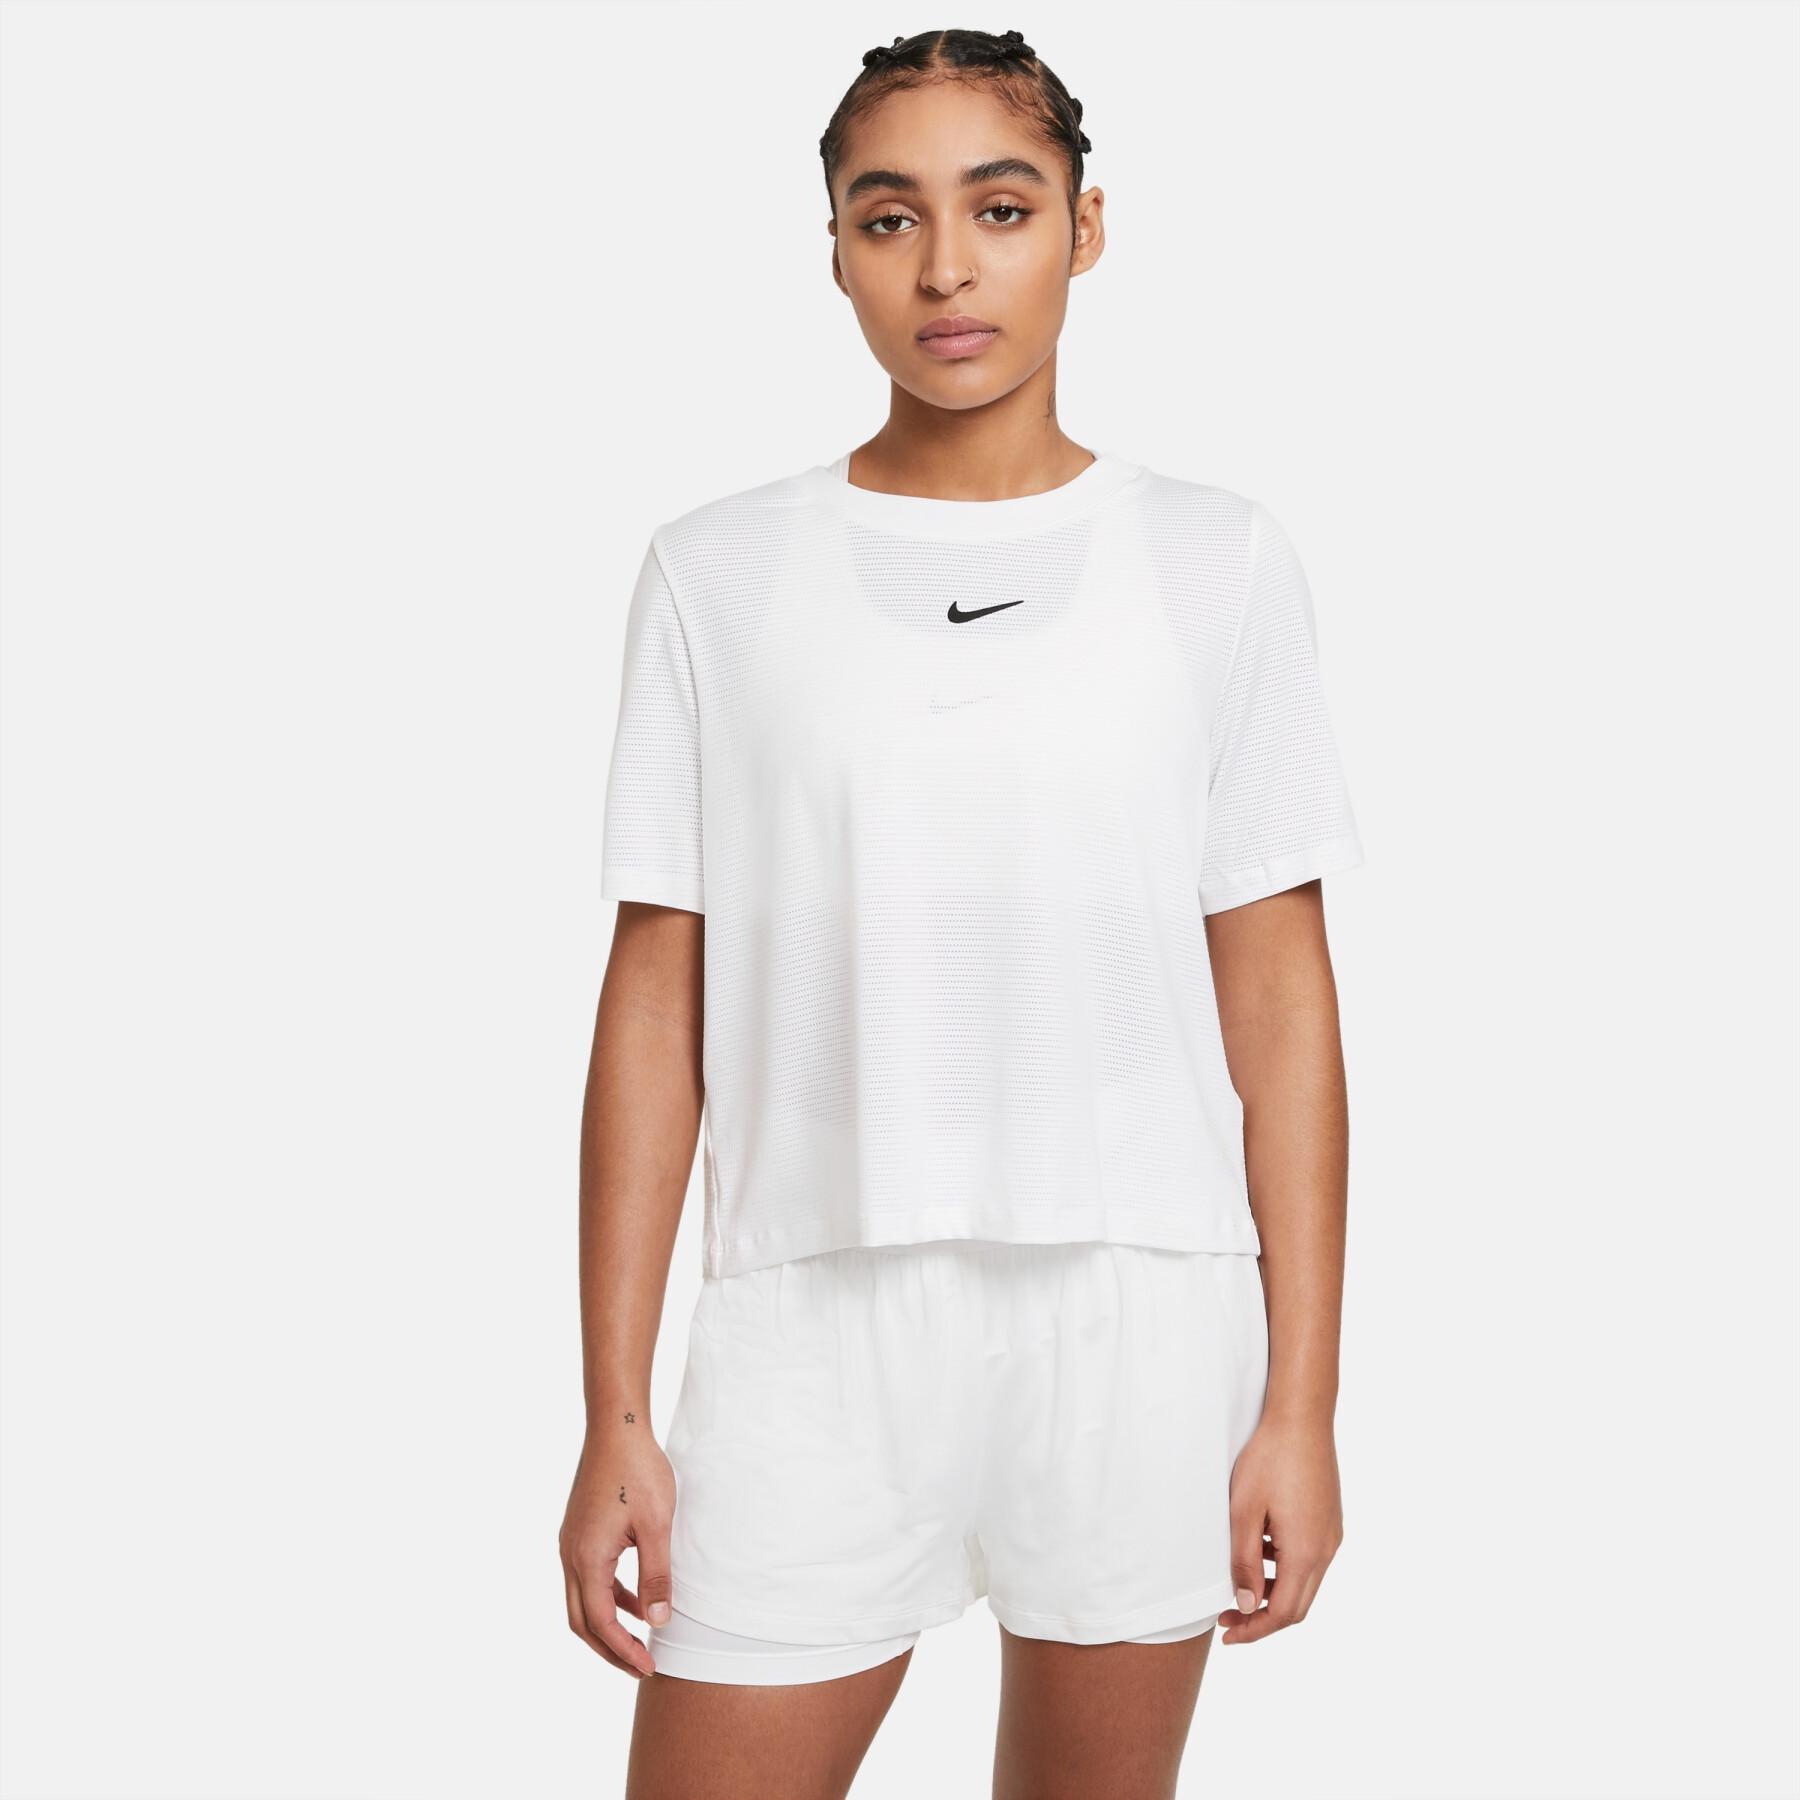 Camiseta feminina Nike court advantage